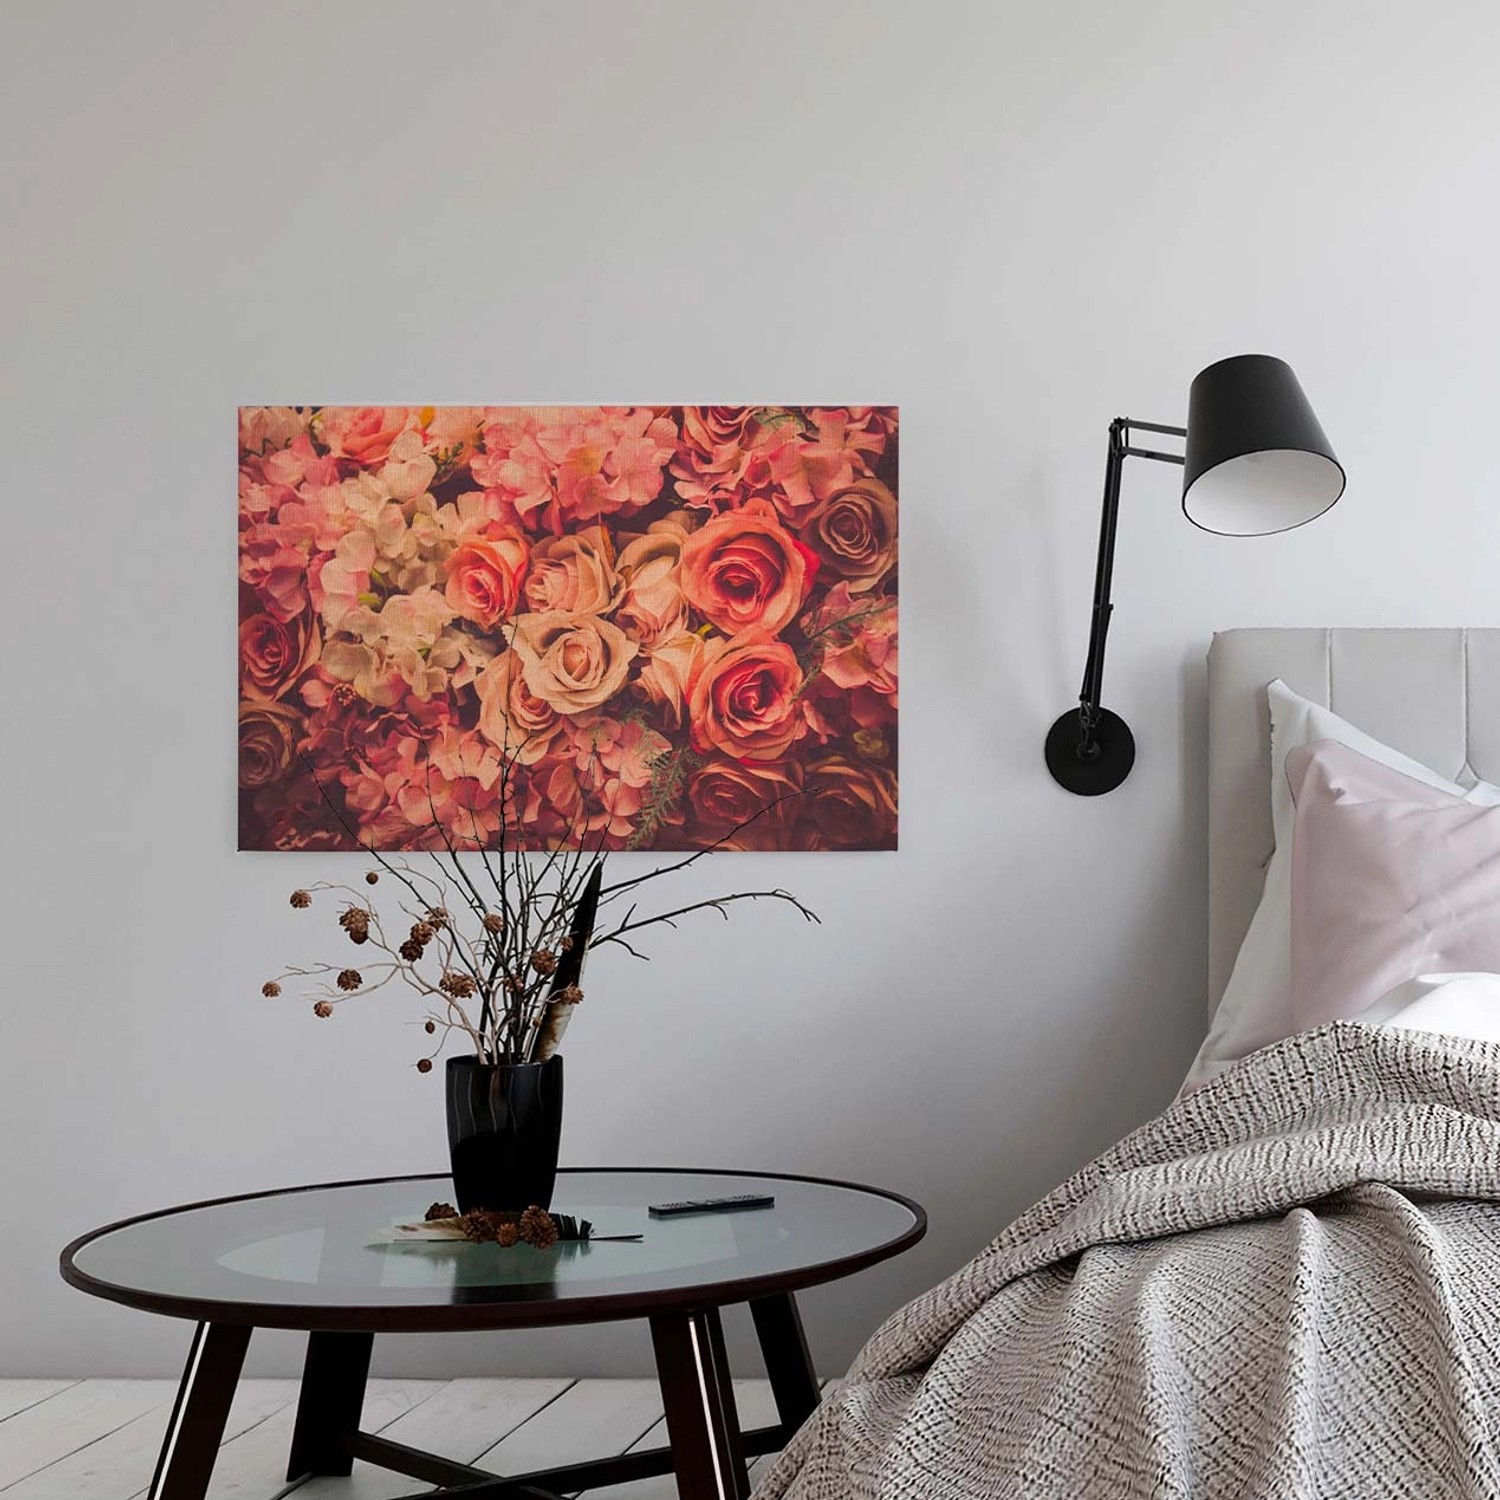 Bricoflor Rosen Bild Auf Leinwand Blumenbild Mit Hortensie In Rosa Und Orange Nostalgie Canvas Wandbild Ideal Für Wohnzi